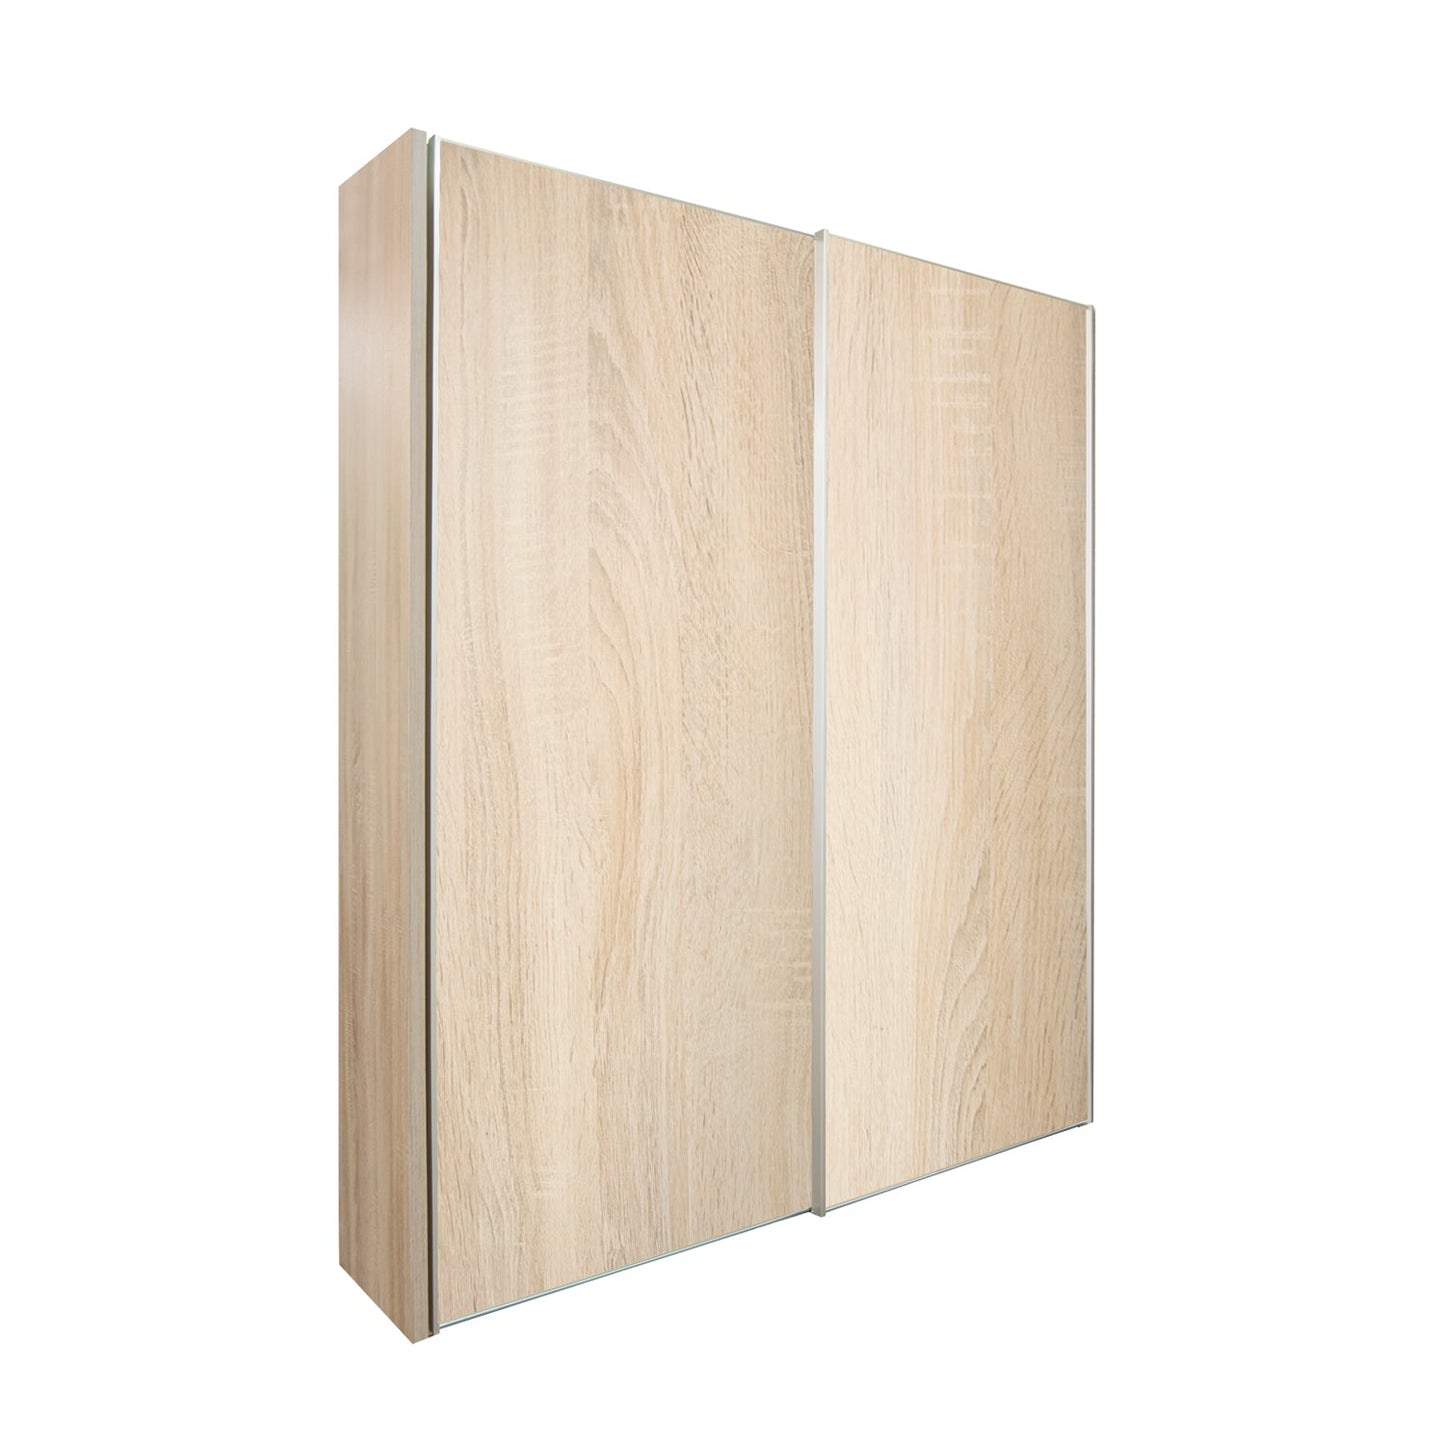 Chicago 200cm Sliding Wardrobe - Wooden Doors, Light Oak